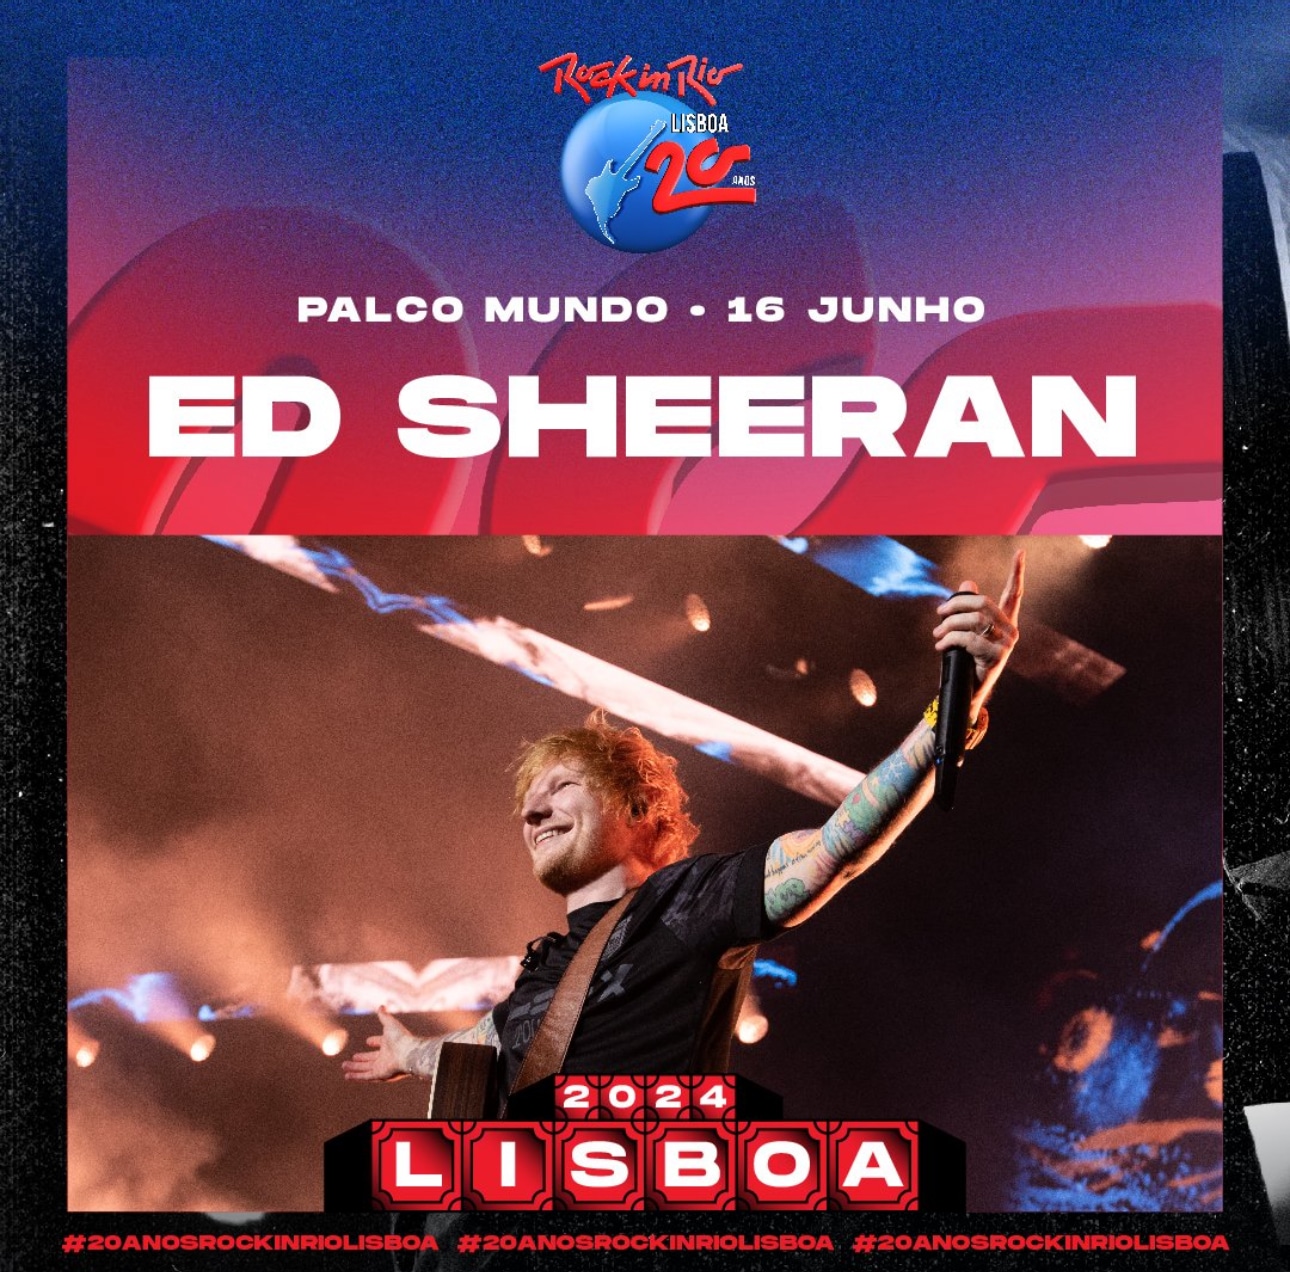 Featured image for “Rock In Rio Lisboa anuncia el cartel completo para el día 16 de junio con Ed Sheeran y Calum Scott a la cabeza”